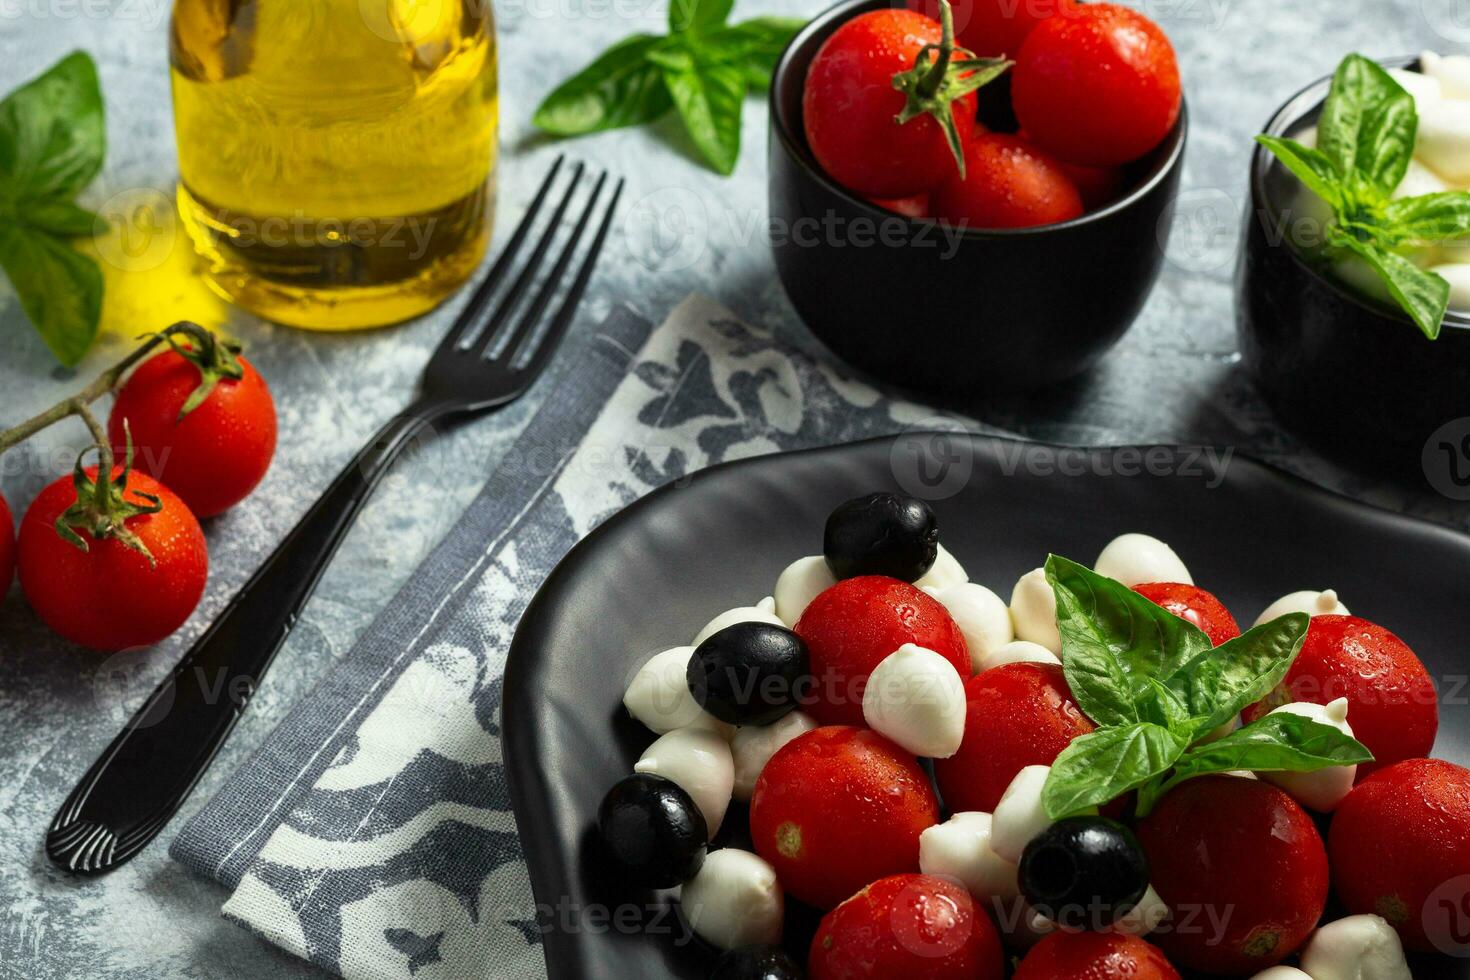 clássico italiano salada caprese servido dentro original Formato com cereja tomates, mini mussarela pérolas, manjericão folhas e balsâmico Esmalte foto